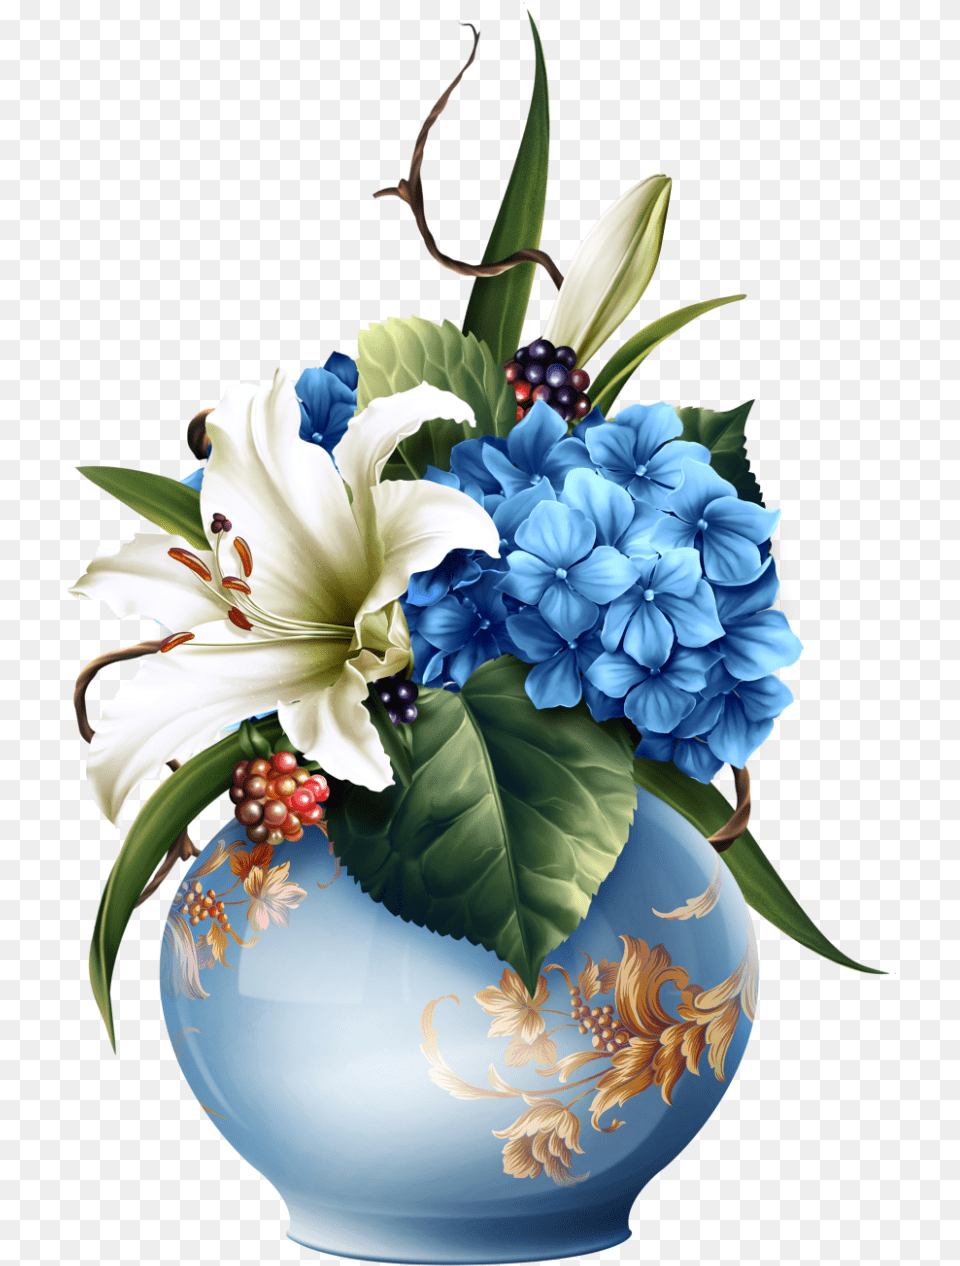 Flower, Flower Arrangement, Flower Bouquet, Plant, Pottery Png Image